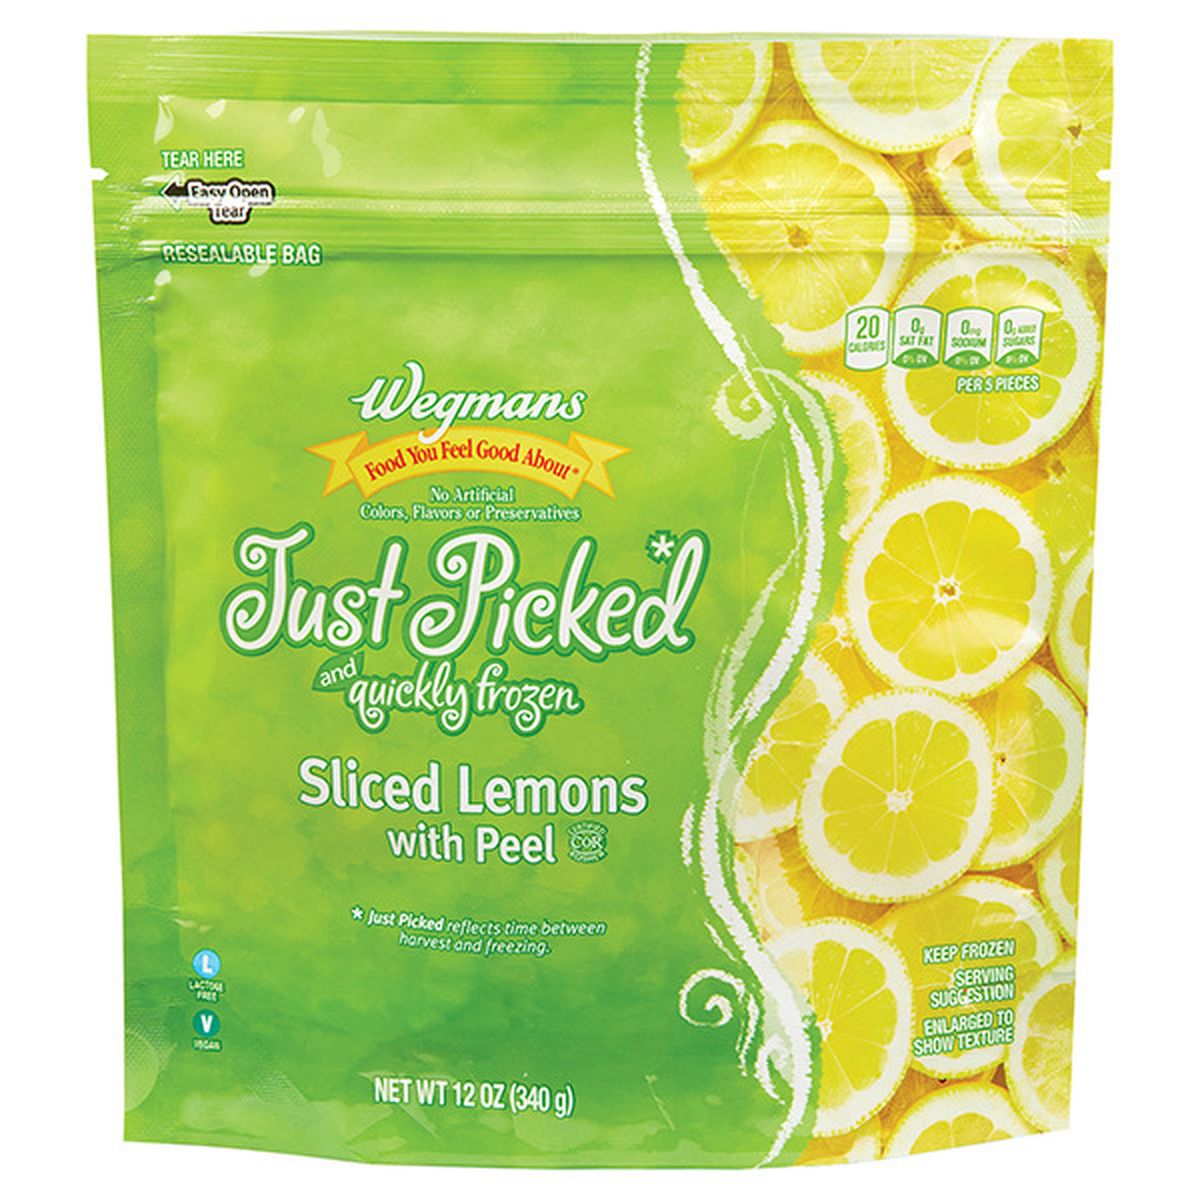 Calories in Wegmans Frozen Sliced Lemons with Peel